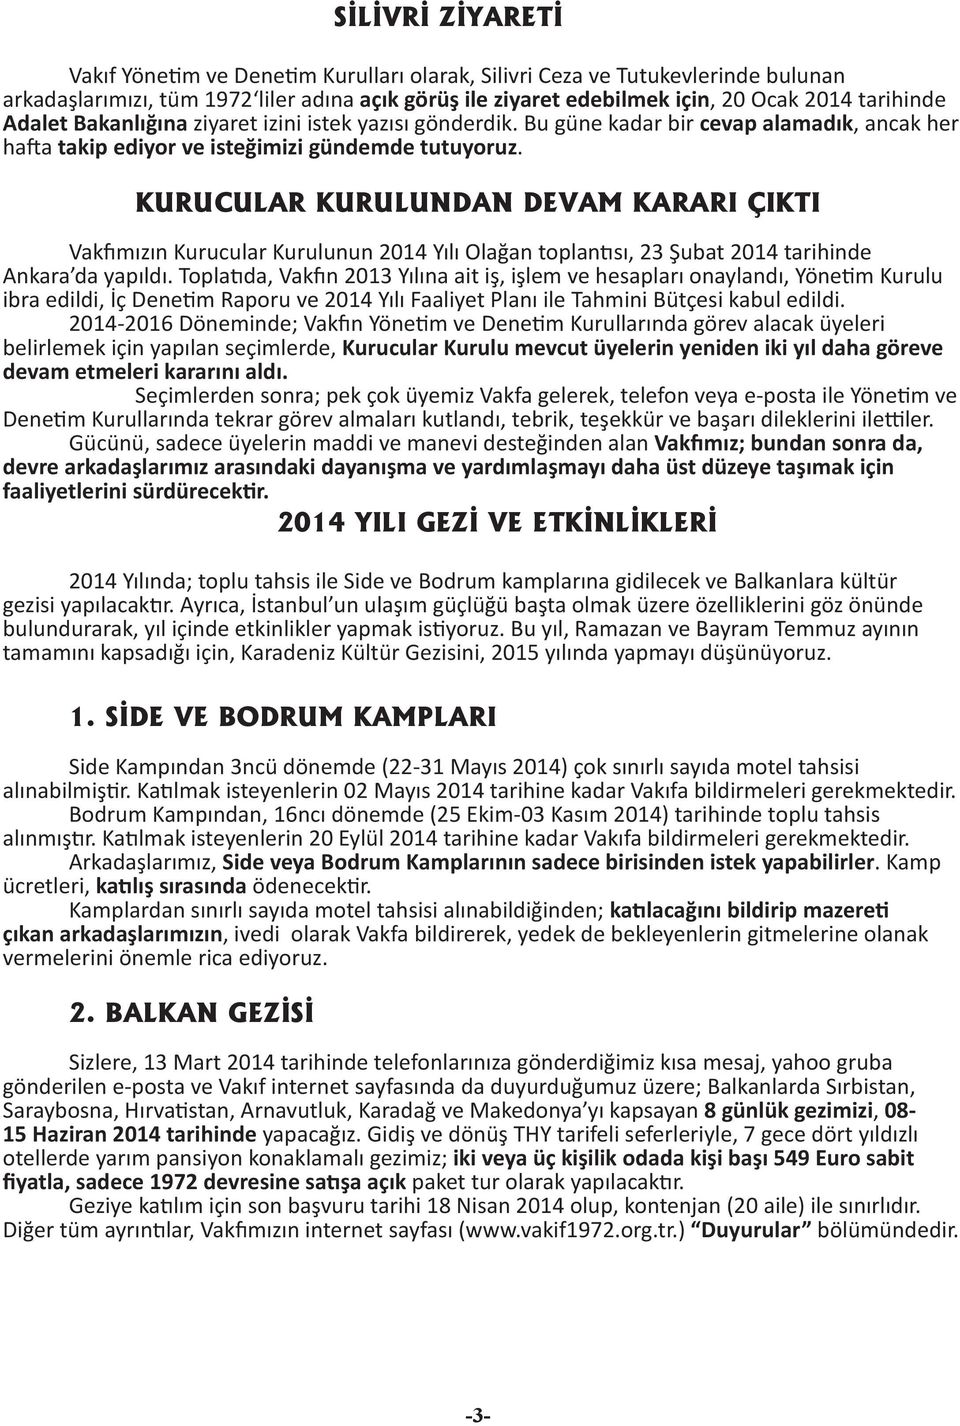 URUCULAR URULUNDAN DEVAM ARARI ÇITI Vak mızın urucular urulunun 2014 Yılı Olağan toplan sı, 23 Şubat 2014 tarihinde Ankara da yapıldı.